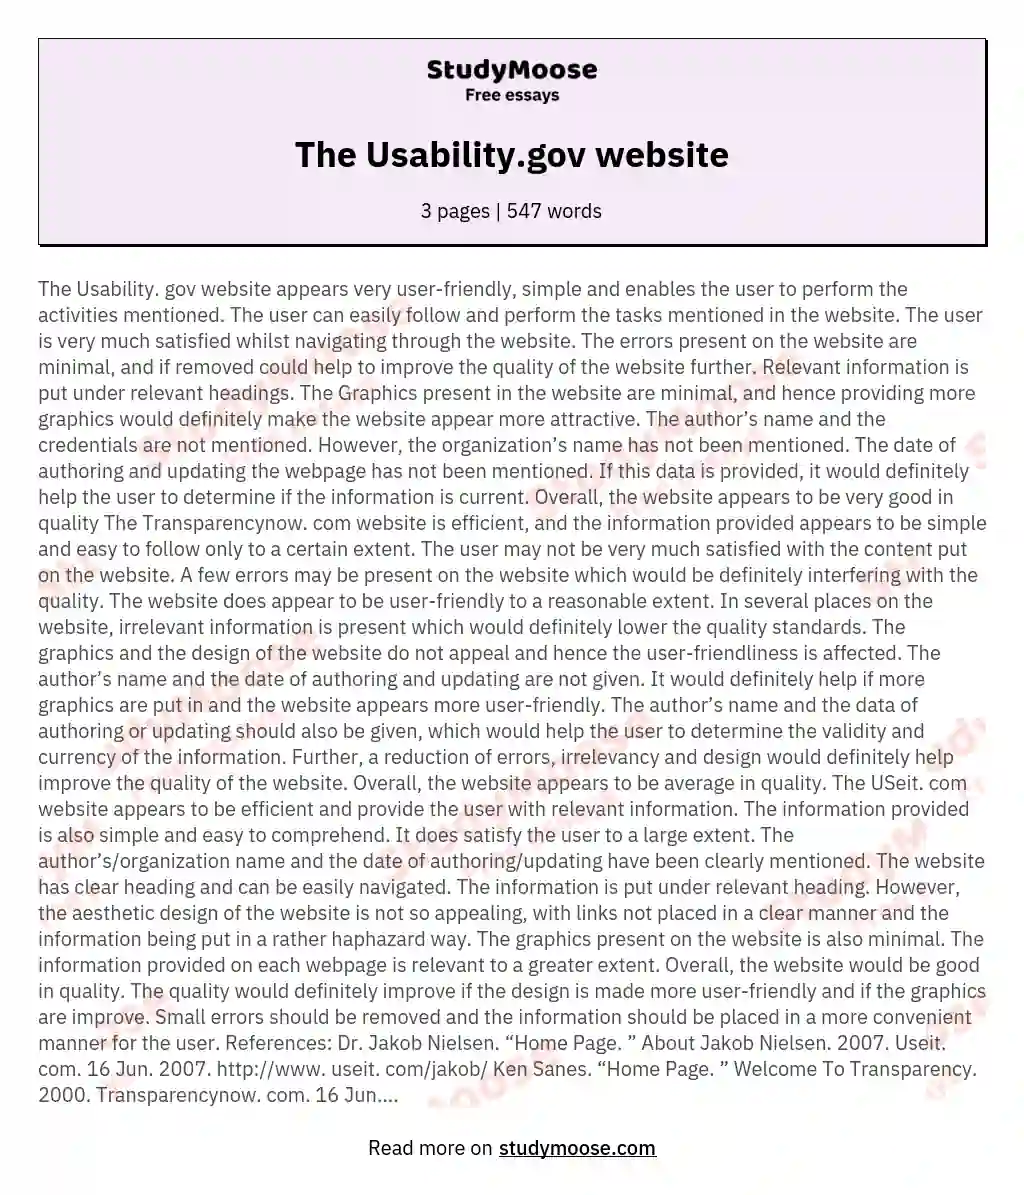 The Usability.gov website